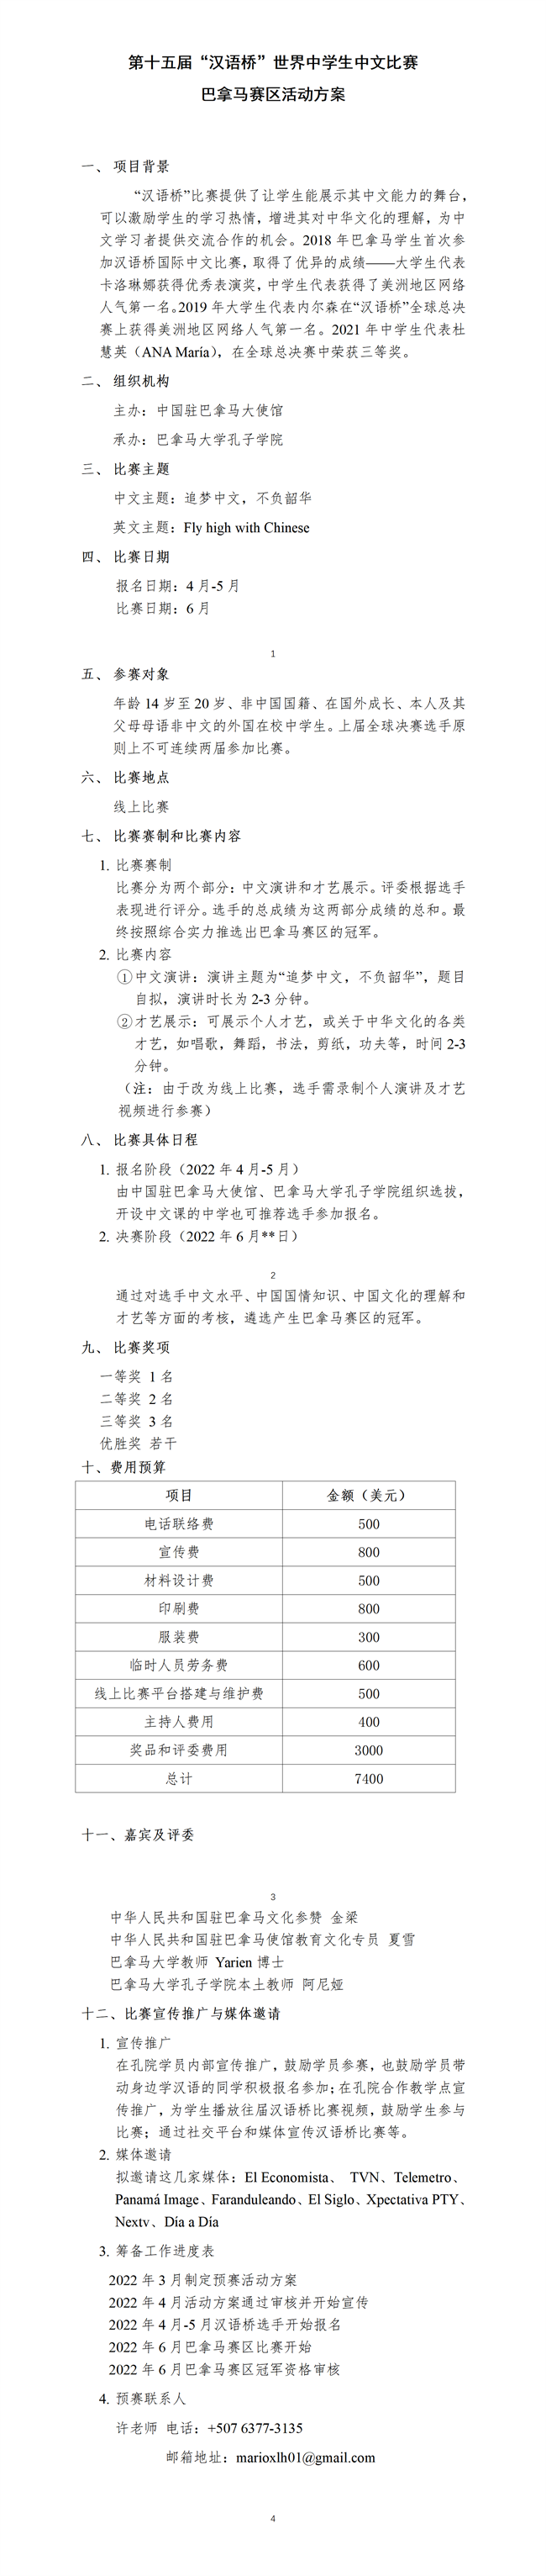 第十五届汉语桥世界中学生中文比赛巴拿马赛区预赛方案_01.png